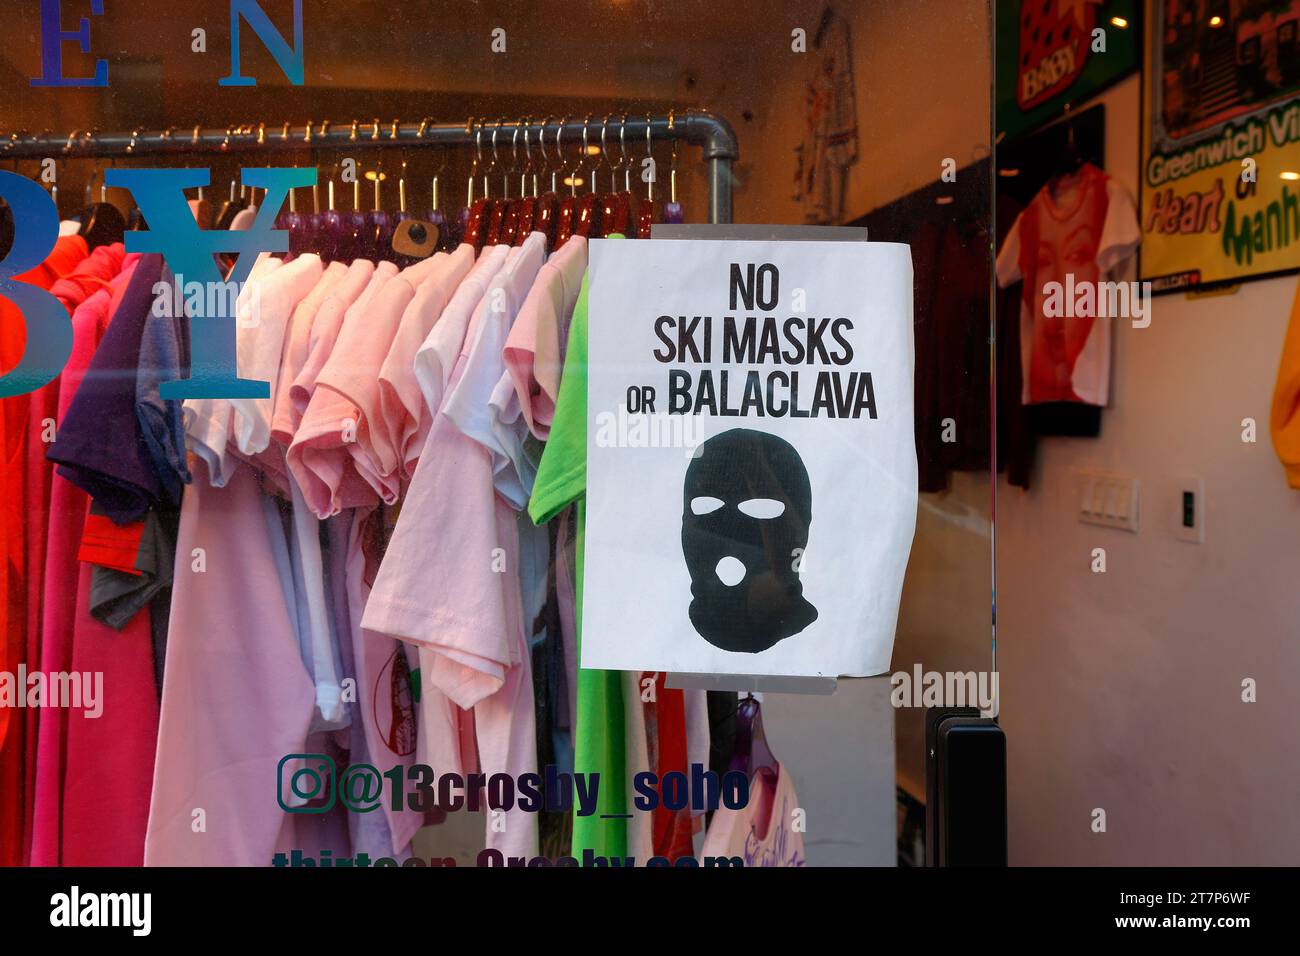 Una señal de advertencia de 'No hay máscaras de esquí o Balaclava' en la ventana de una boutique de ropa en la ciudad de Nueva York. Foto de stock